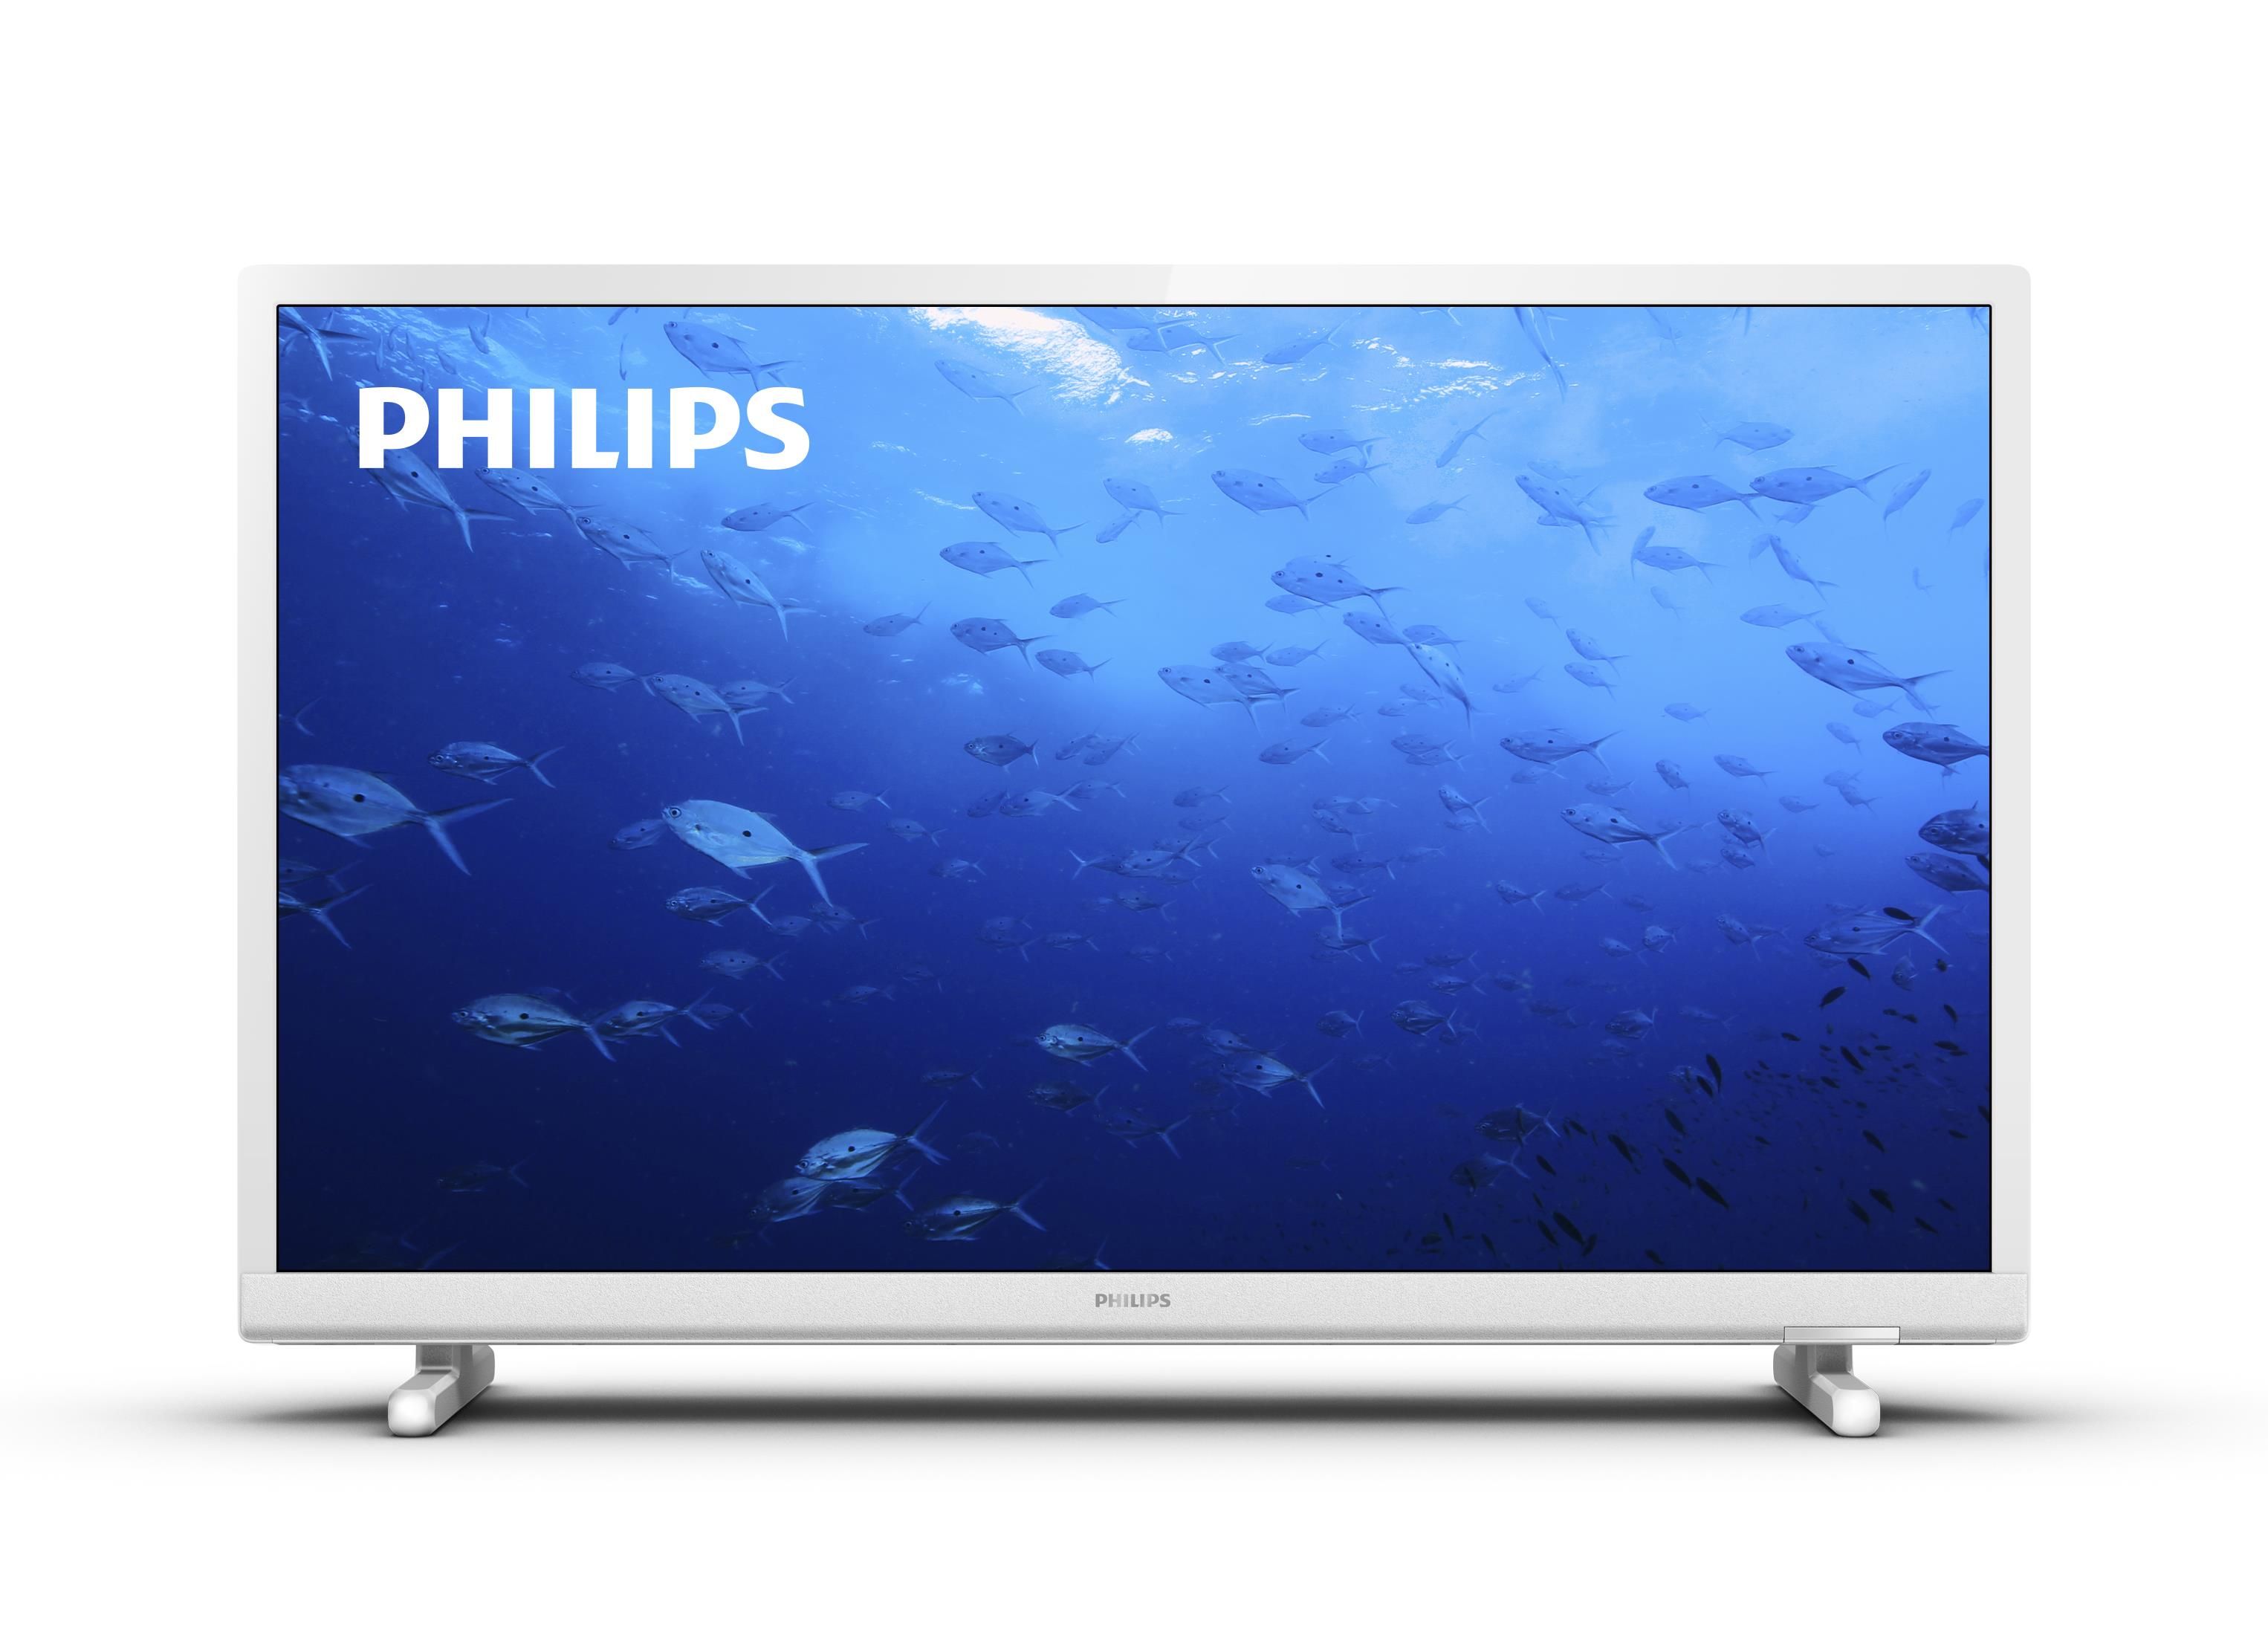 Philips 5500 Series 24PHS5537/12